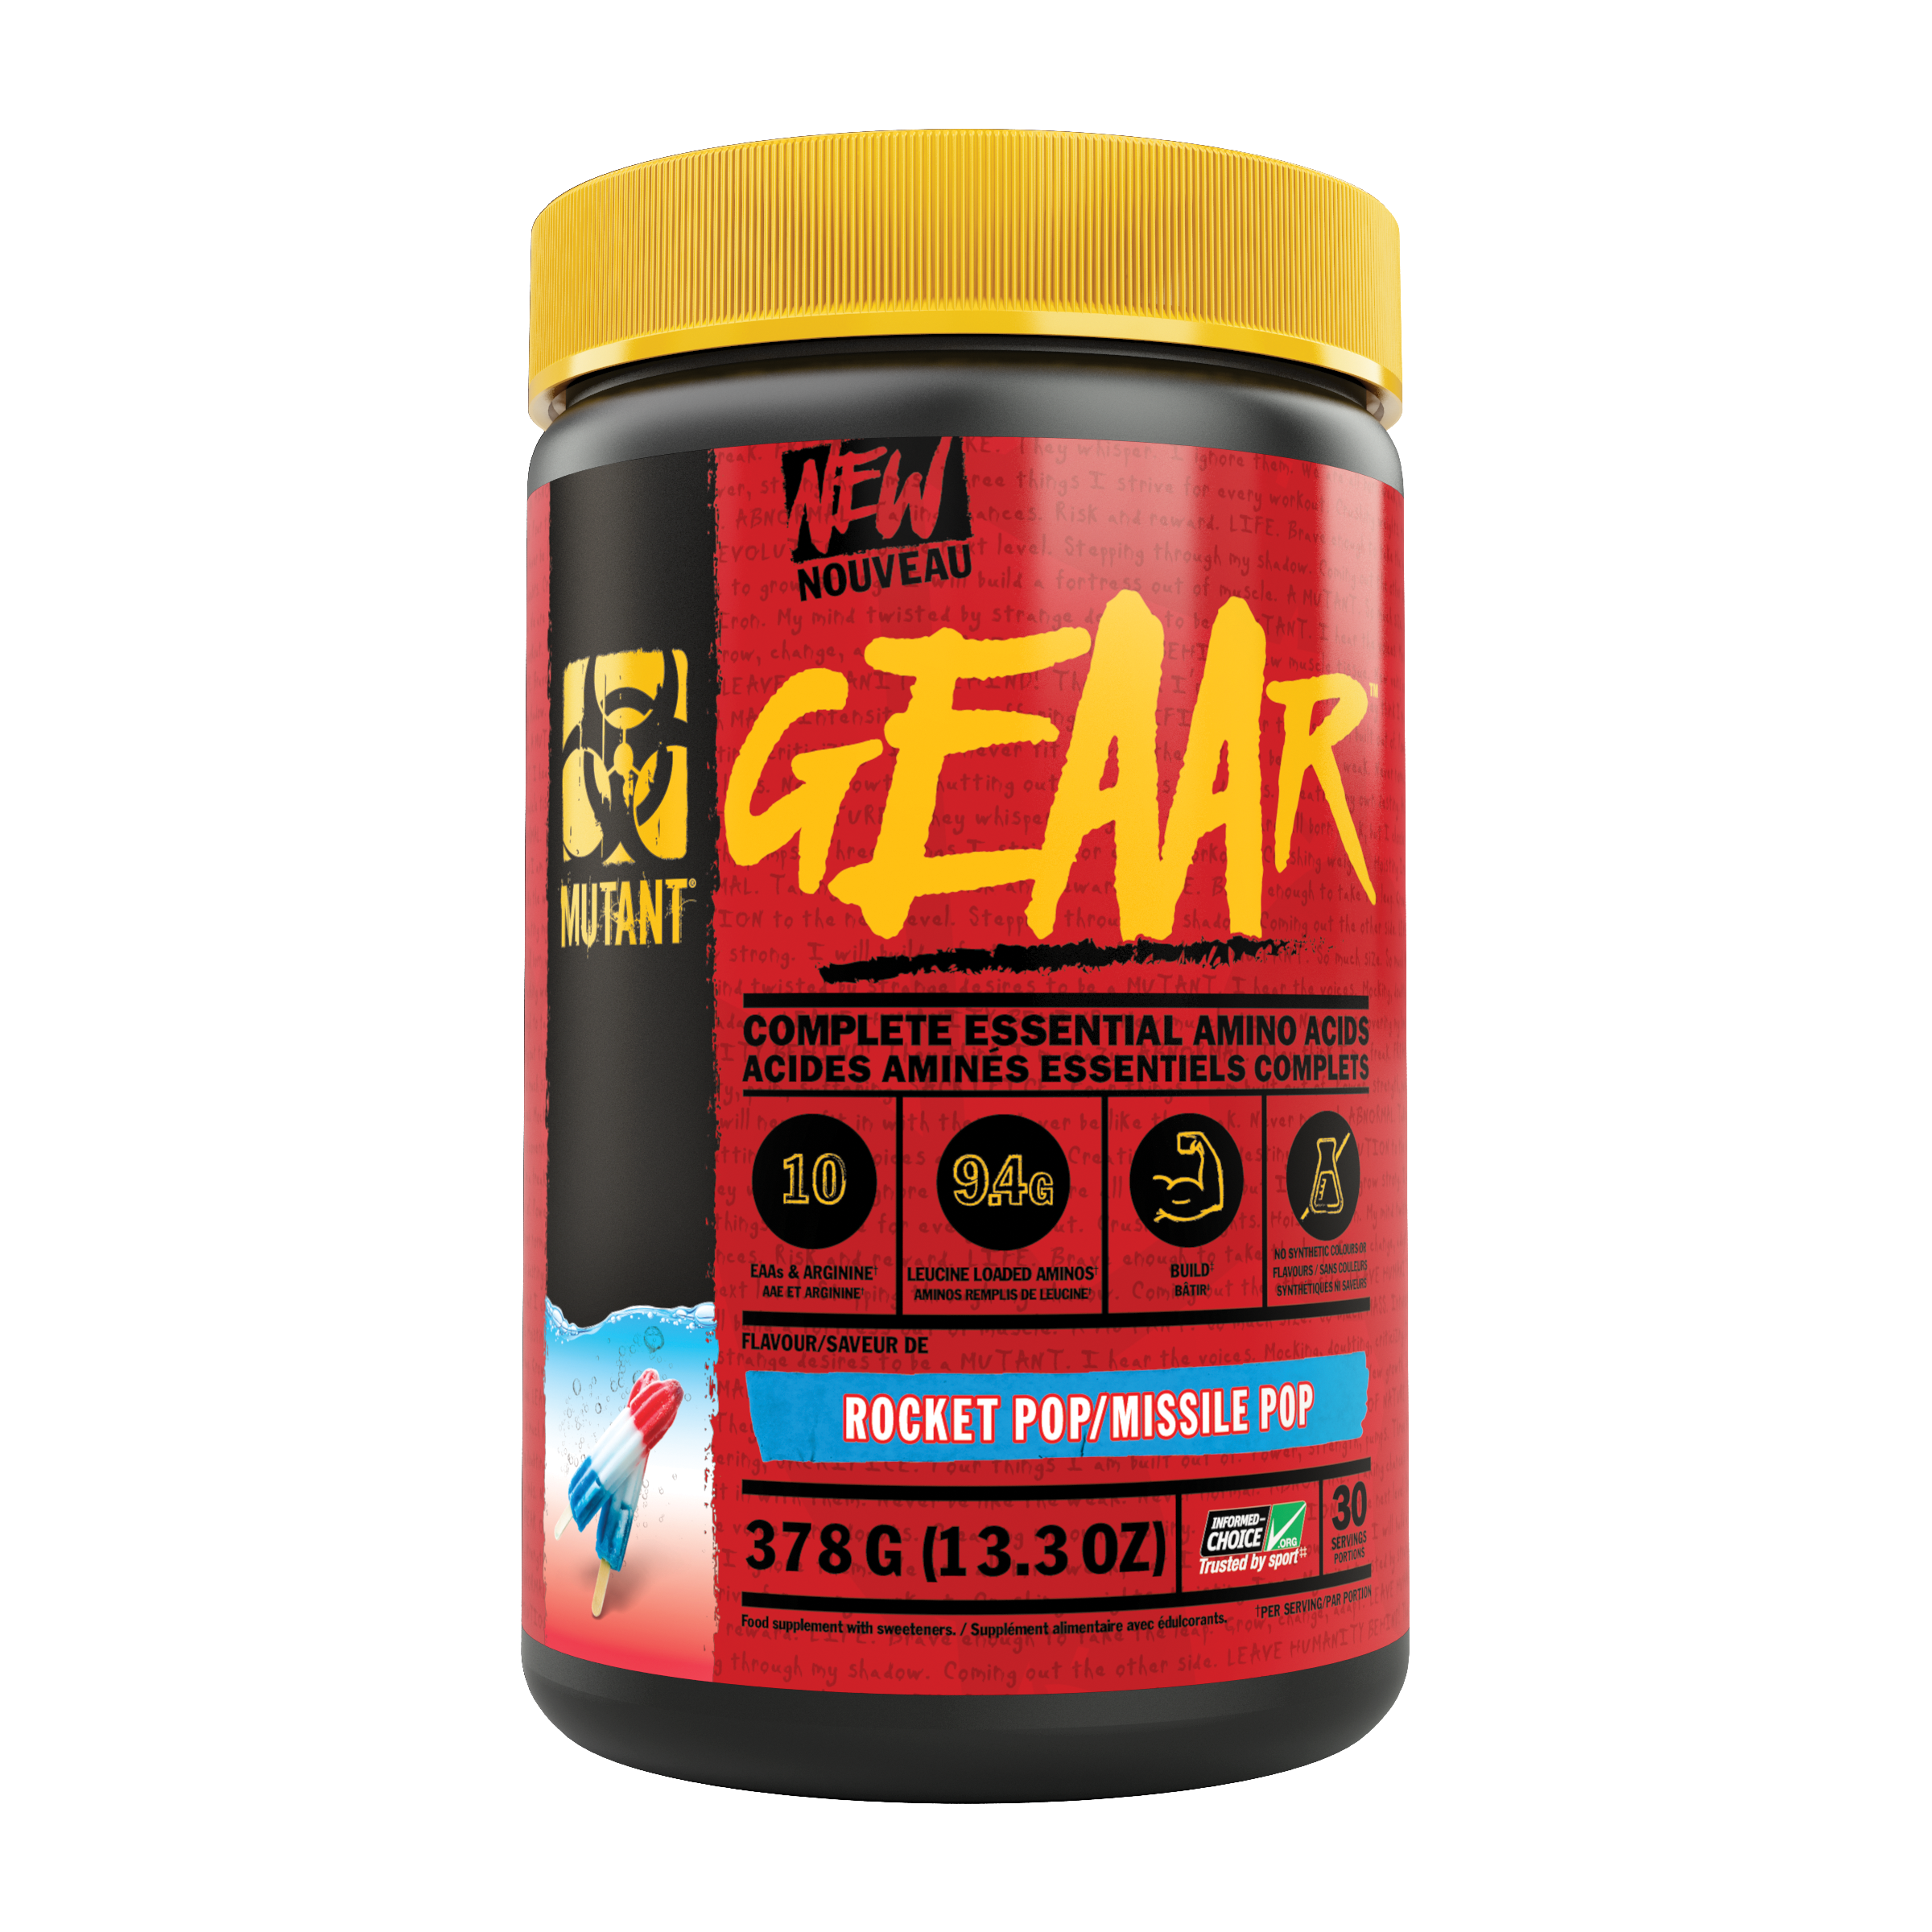 MUTANT GEAAR EAAs Complete Essential Amino Acids (30 servings) mutant-geaar-completely-essential-amino-acids-30-servings BCAAs and Amino Acids Rocket Pop/Missile Pop Mutant